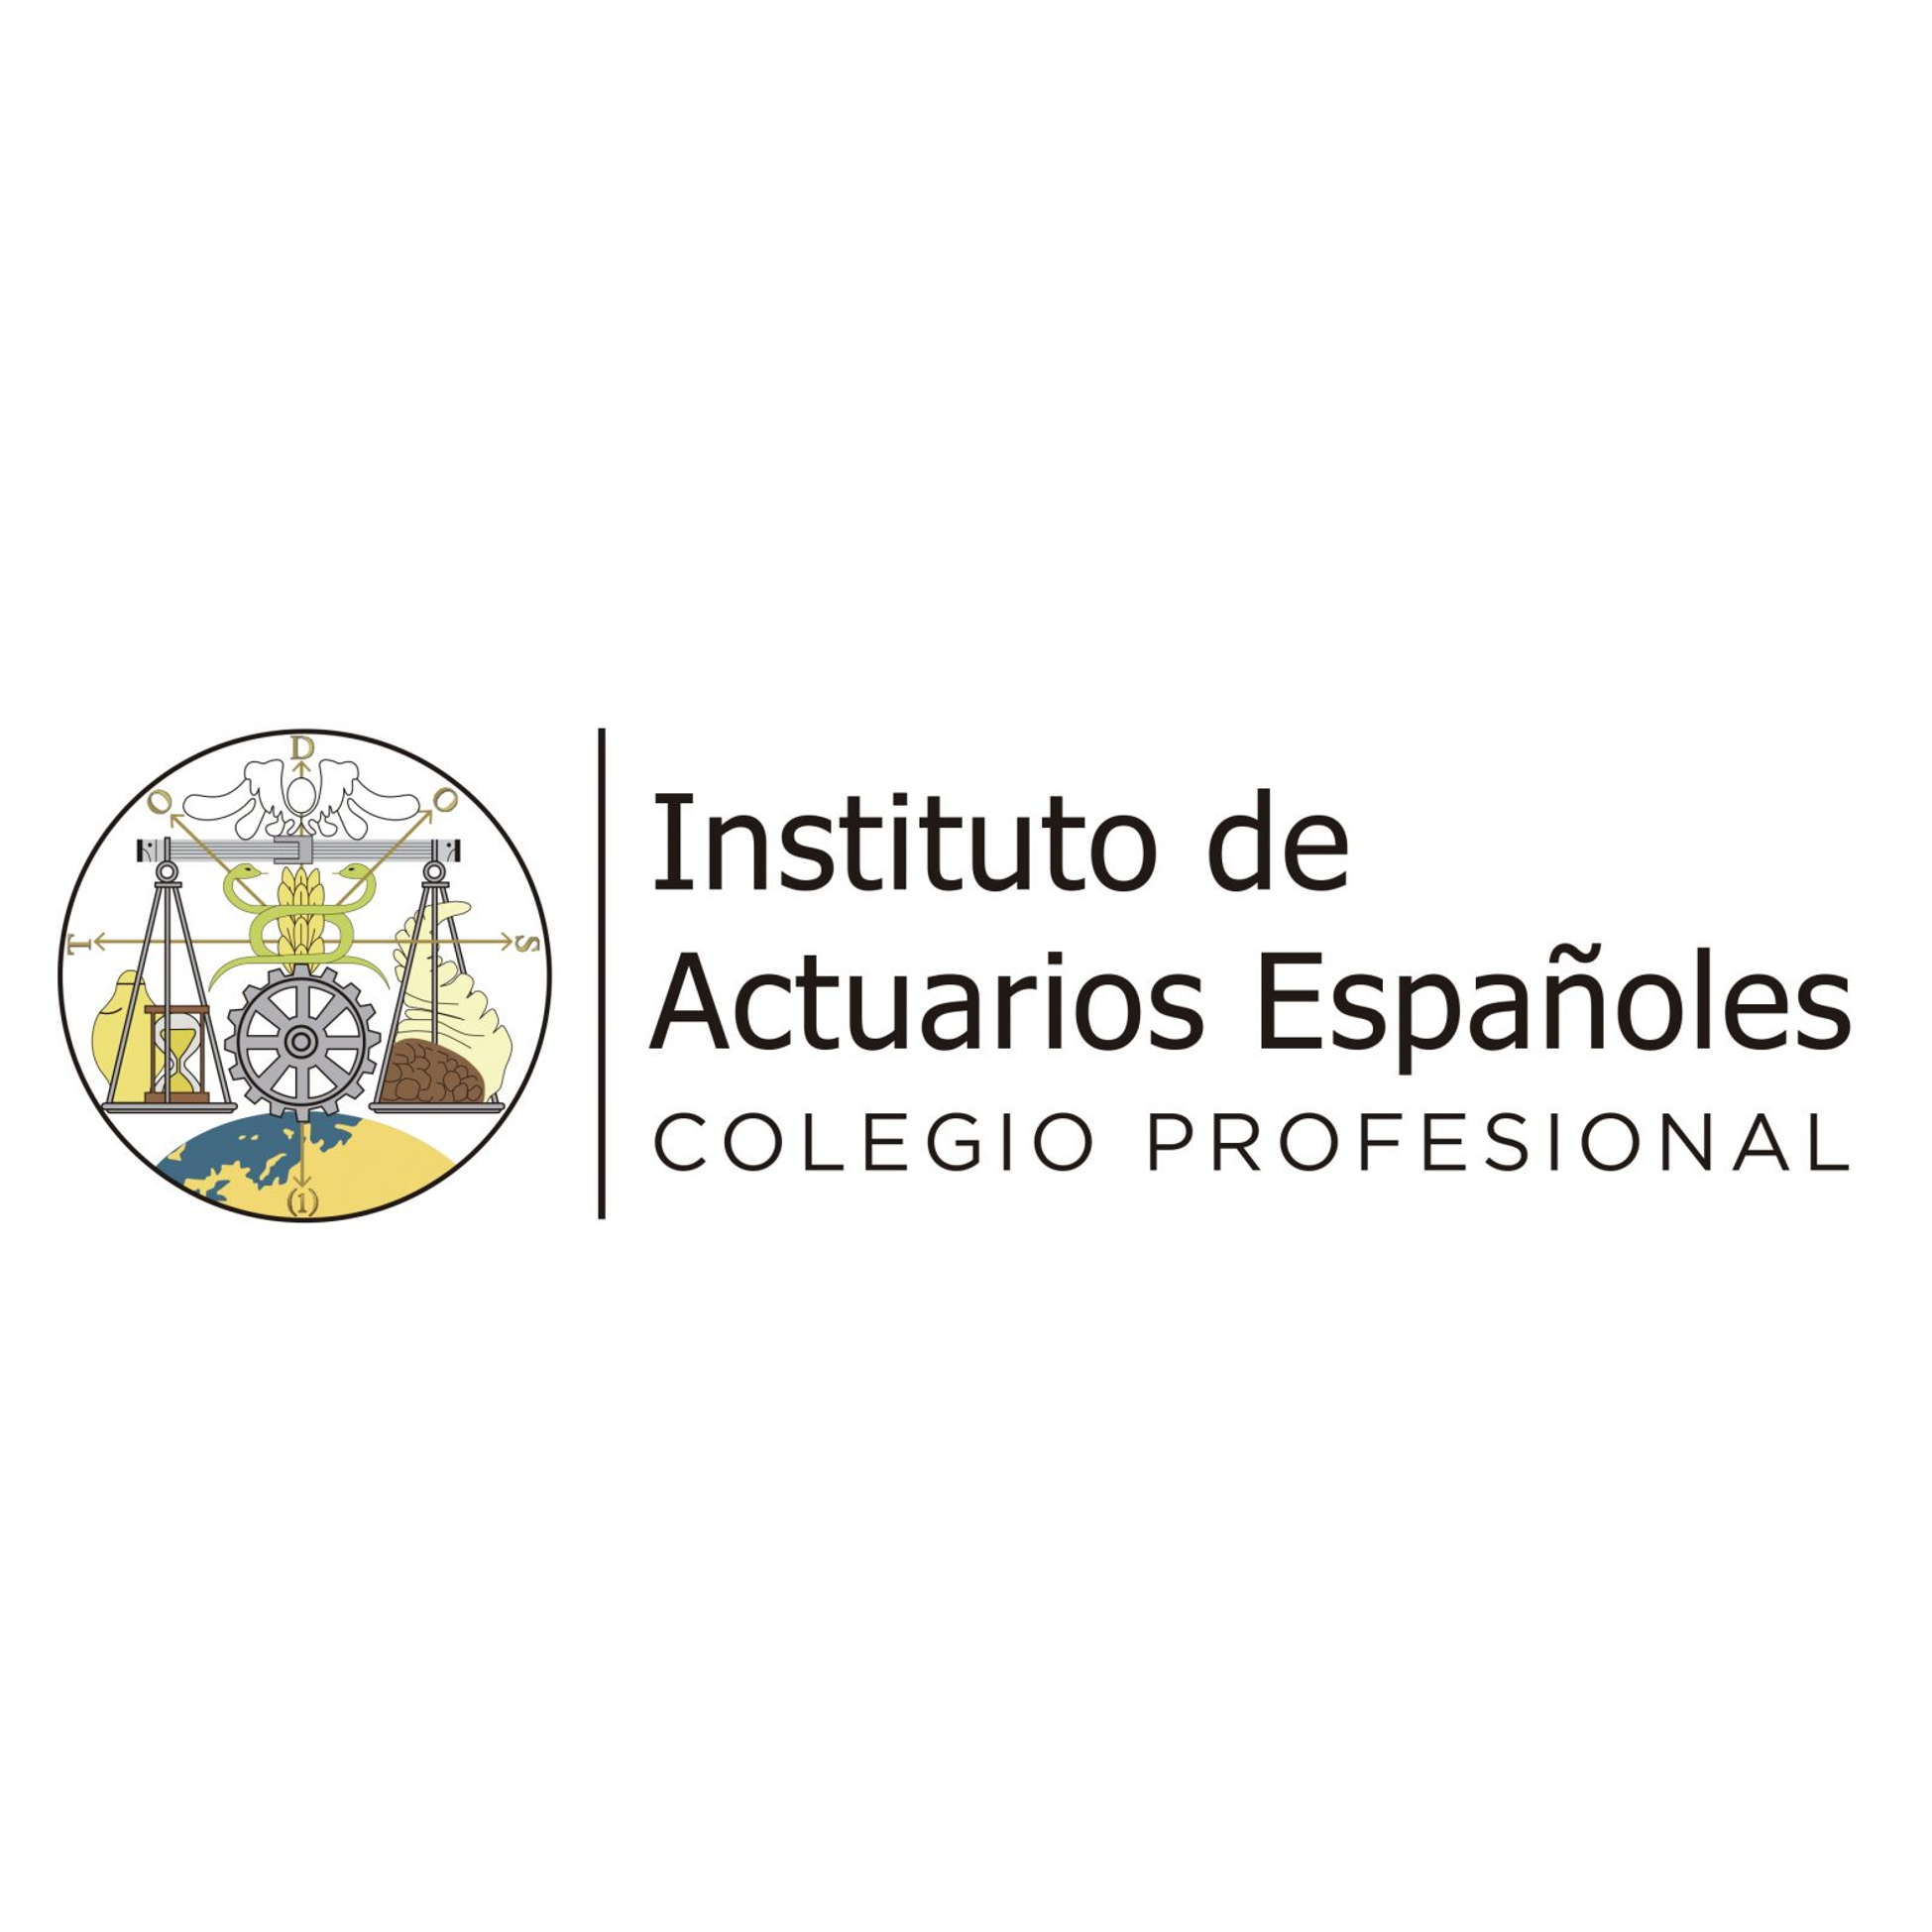 Instituto de Actuarios Españoles